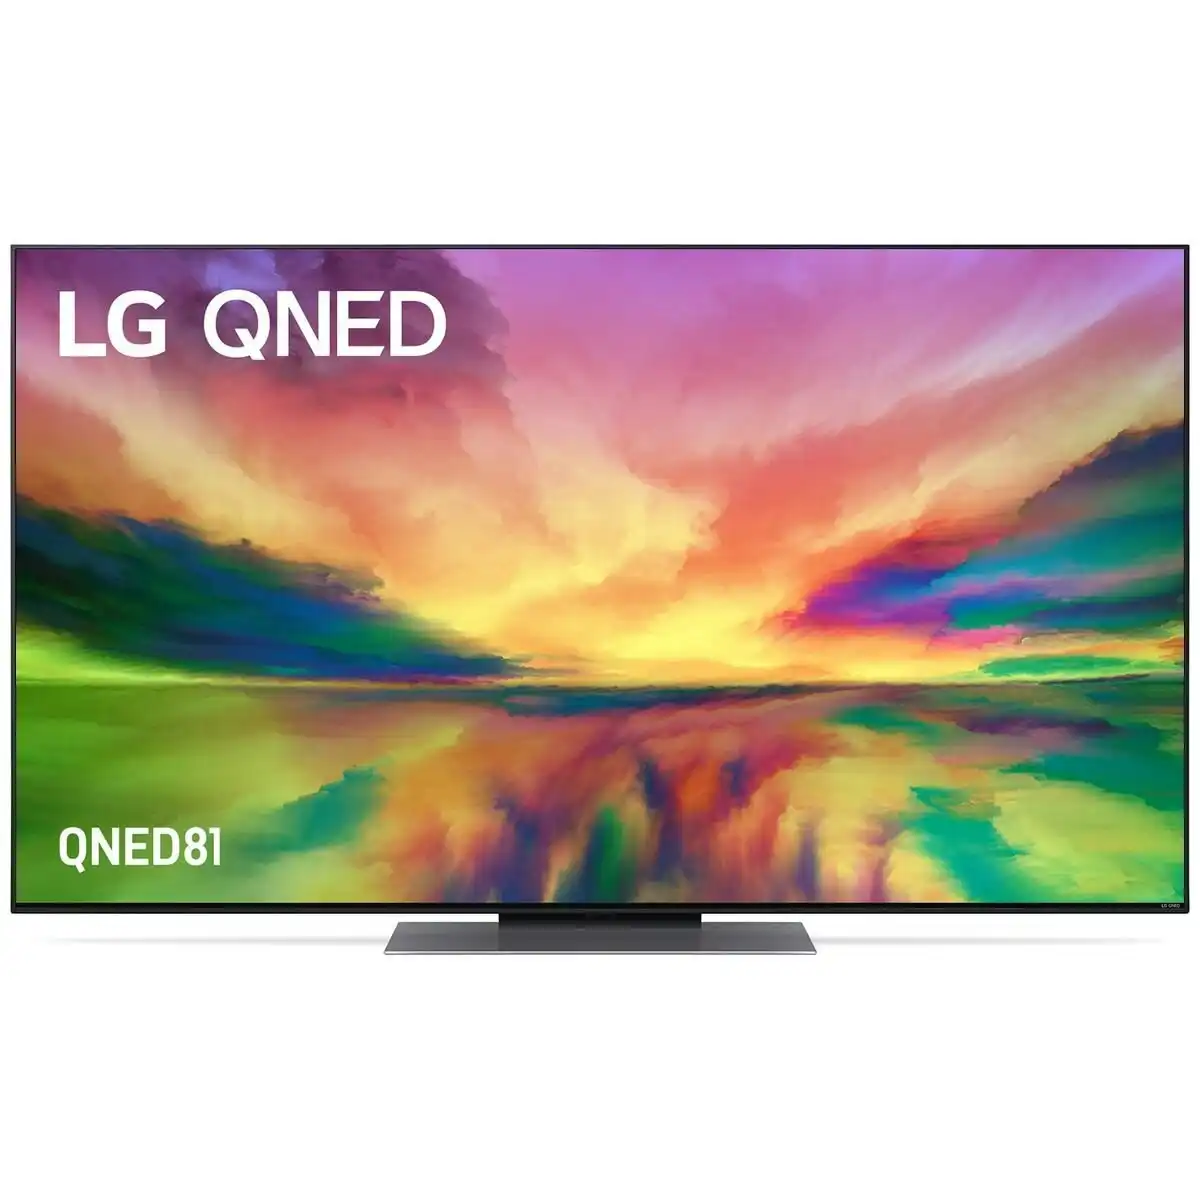 LG 55 Inch QNED81 4K UHD LED Smart TV